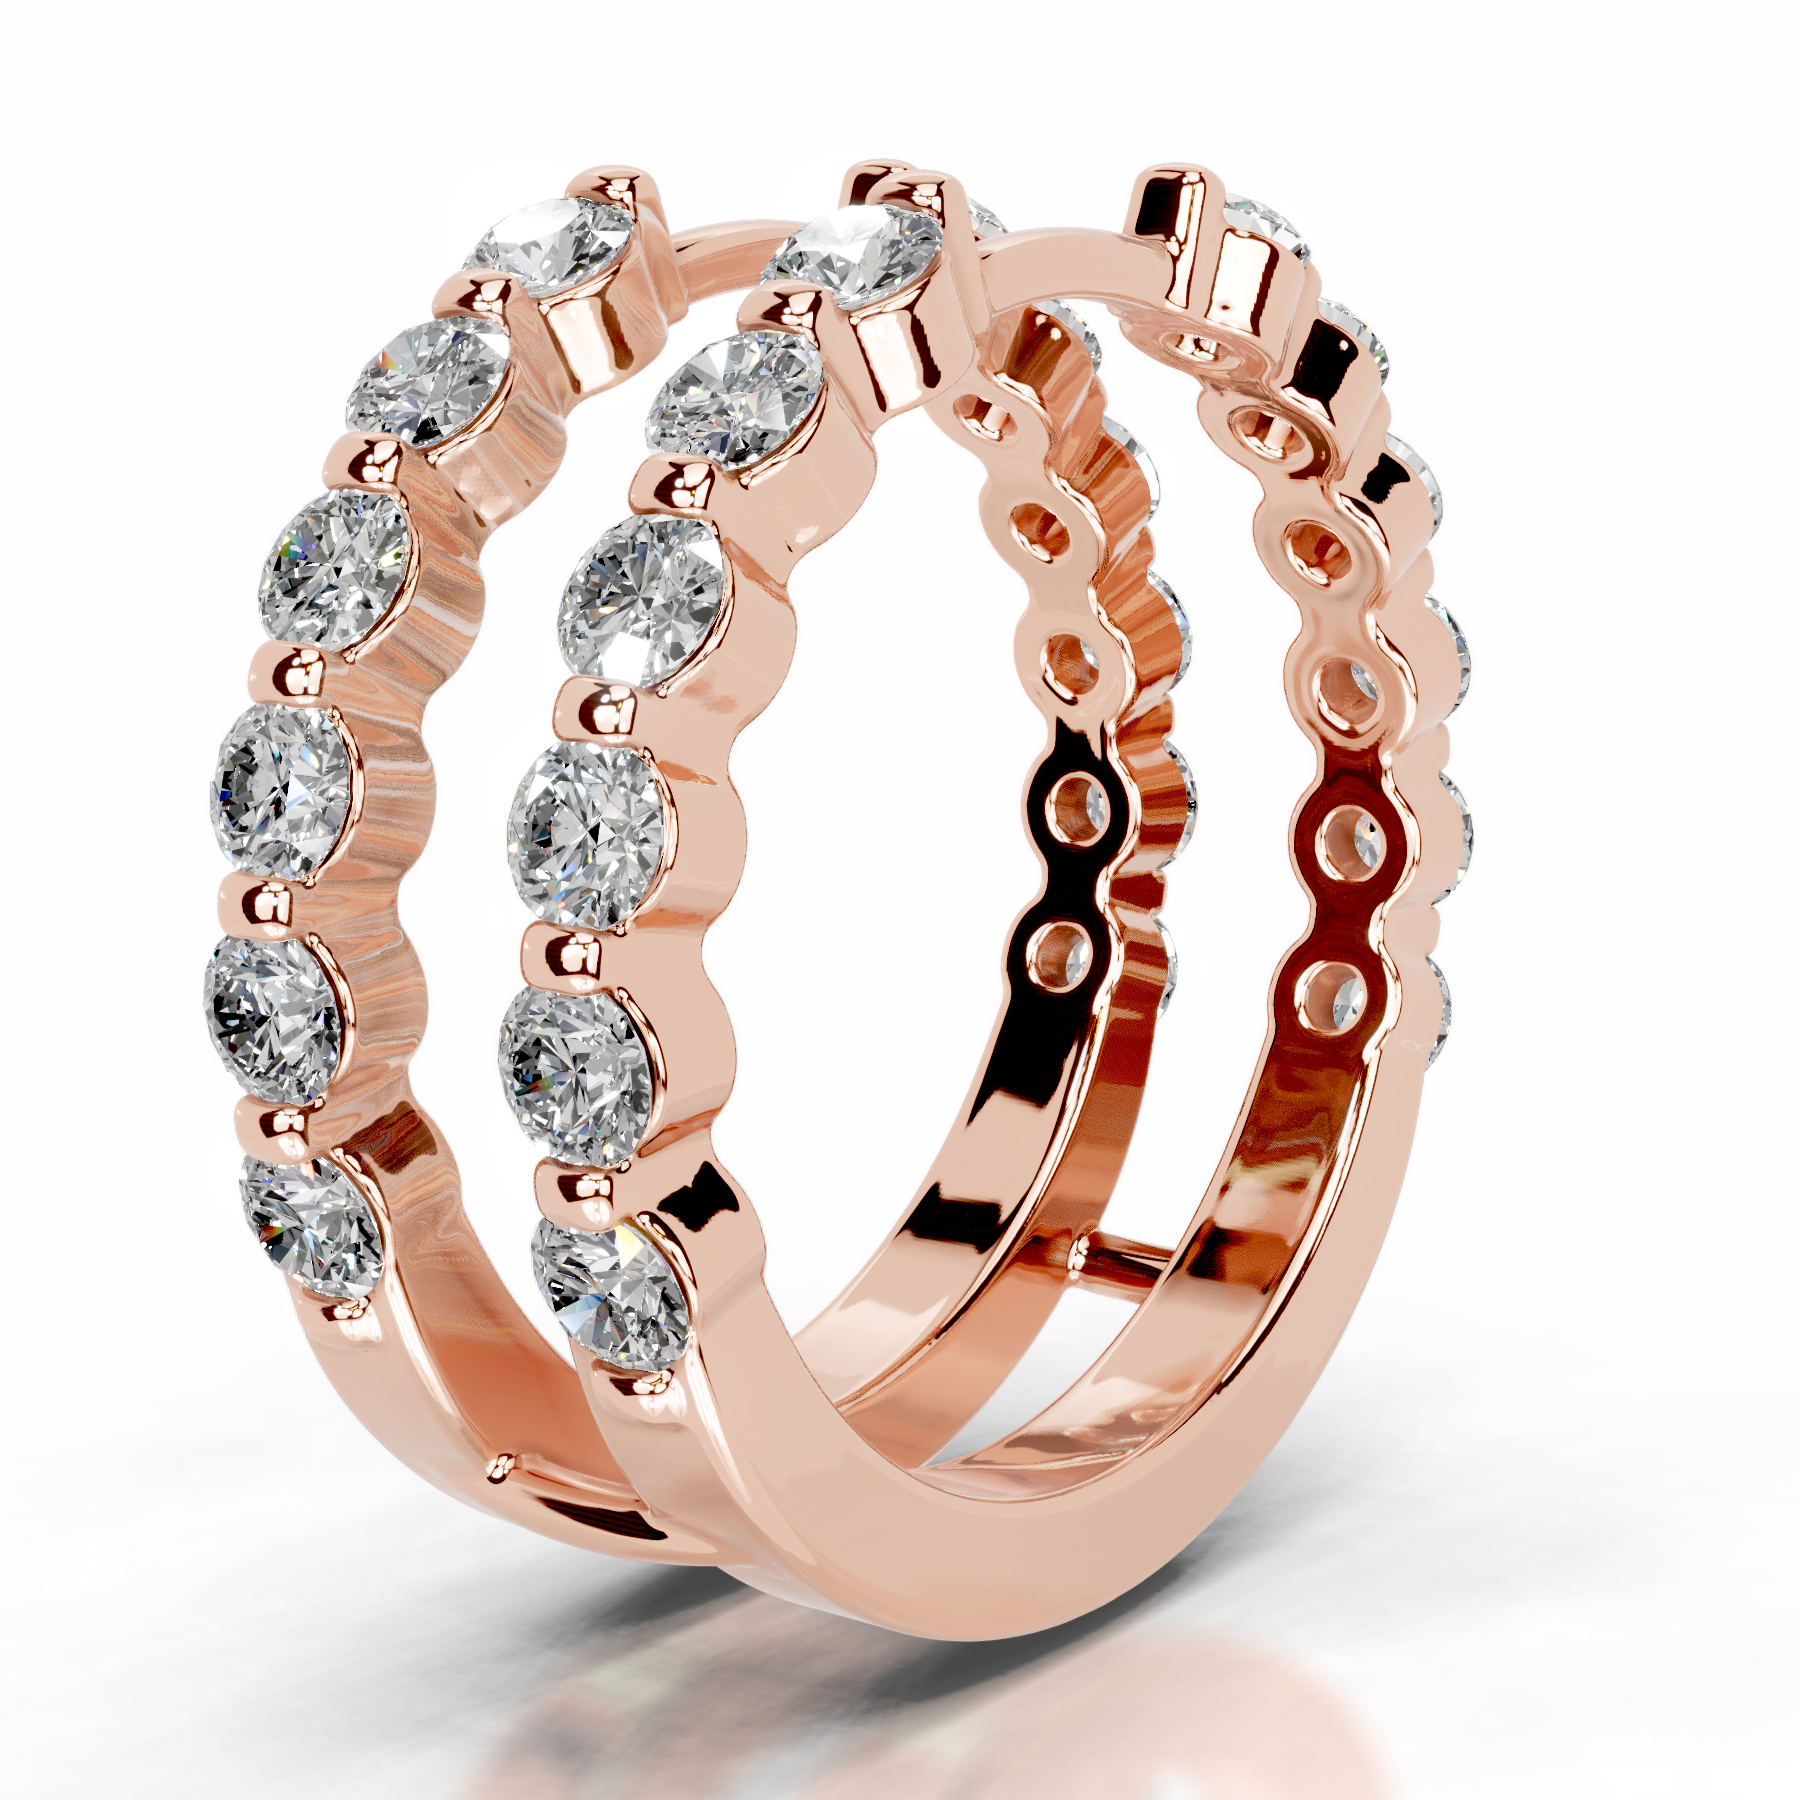 Ashley Lab Grown Diamond Wedding Ring   (1.25 Carat) -14K Rose Gold